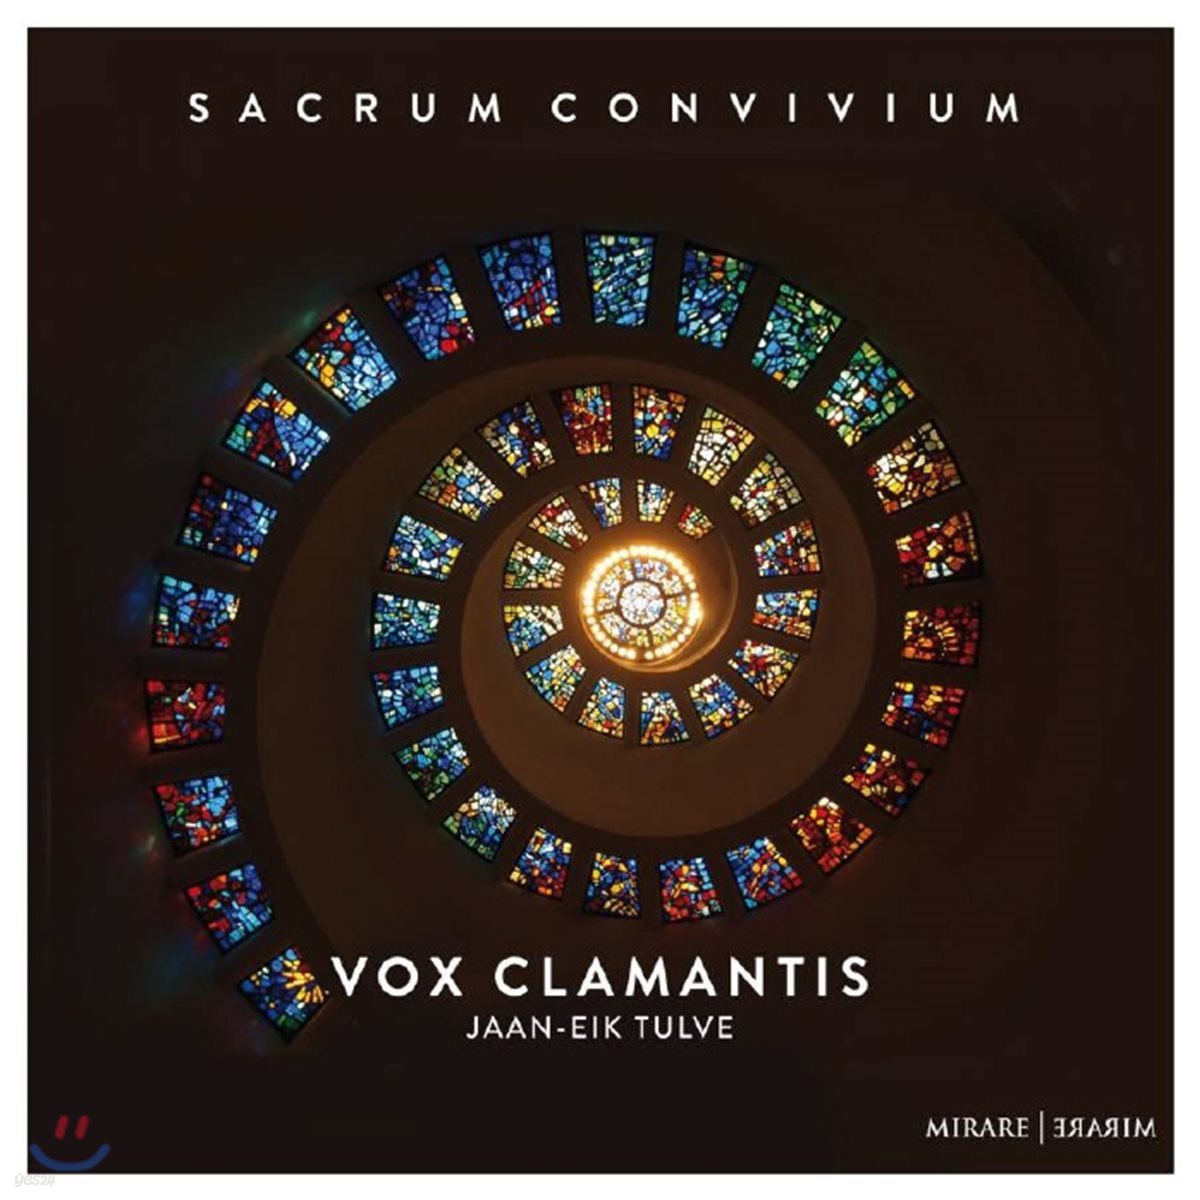 Vox Clamantis 그레고리오 성가 합창곡집 &#39;오 거룩한 잔치여&#39; (Sacrum Convivium) 복스 클라만티스